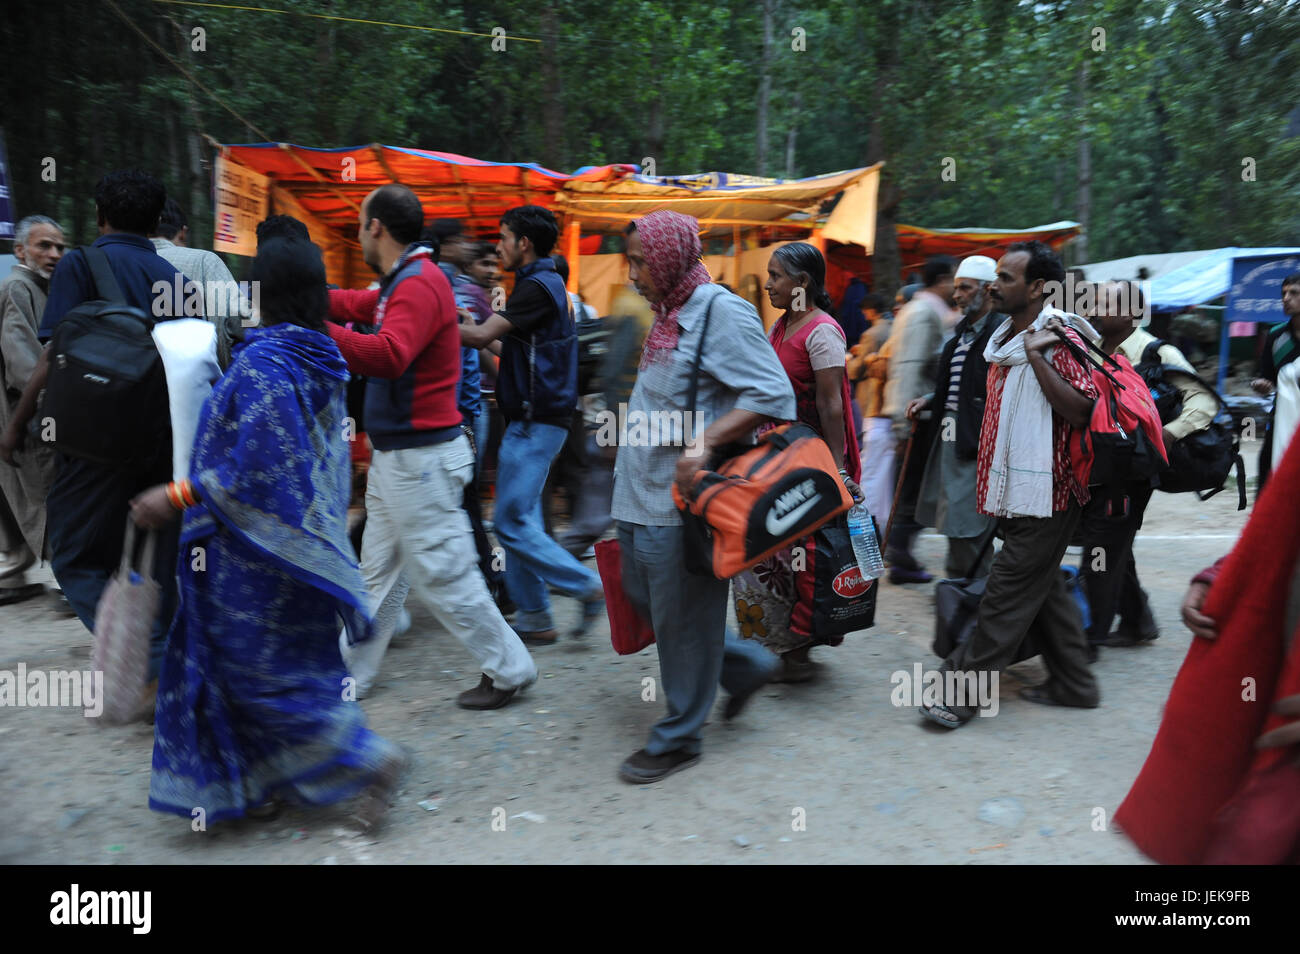 Pilger zu Fuß mit Gepäck Tasche, Srinagar, Jammu Kaschmir, Indien, Asien Stockfoto